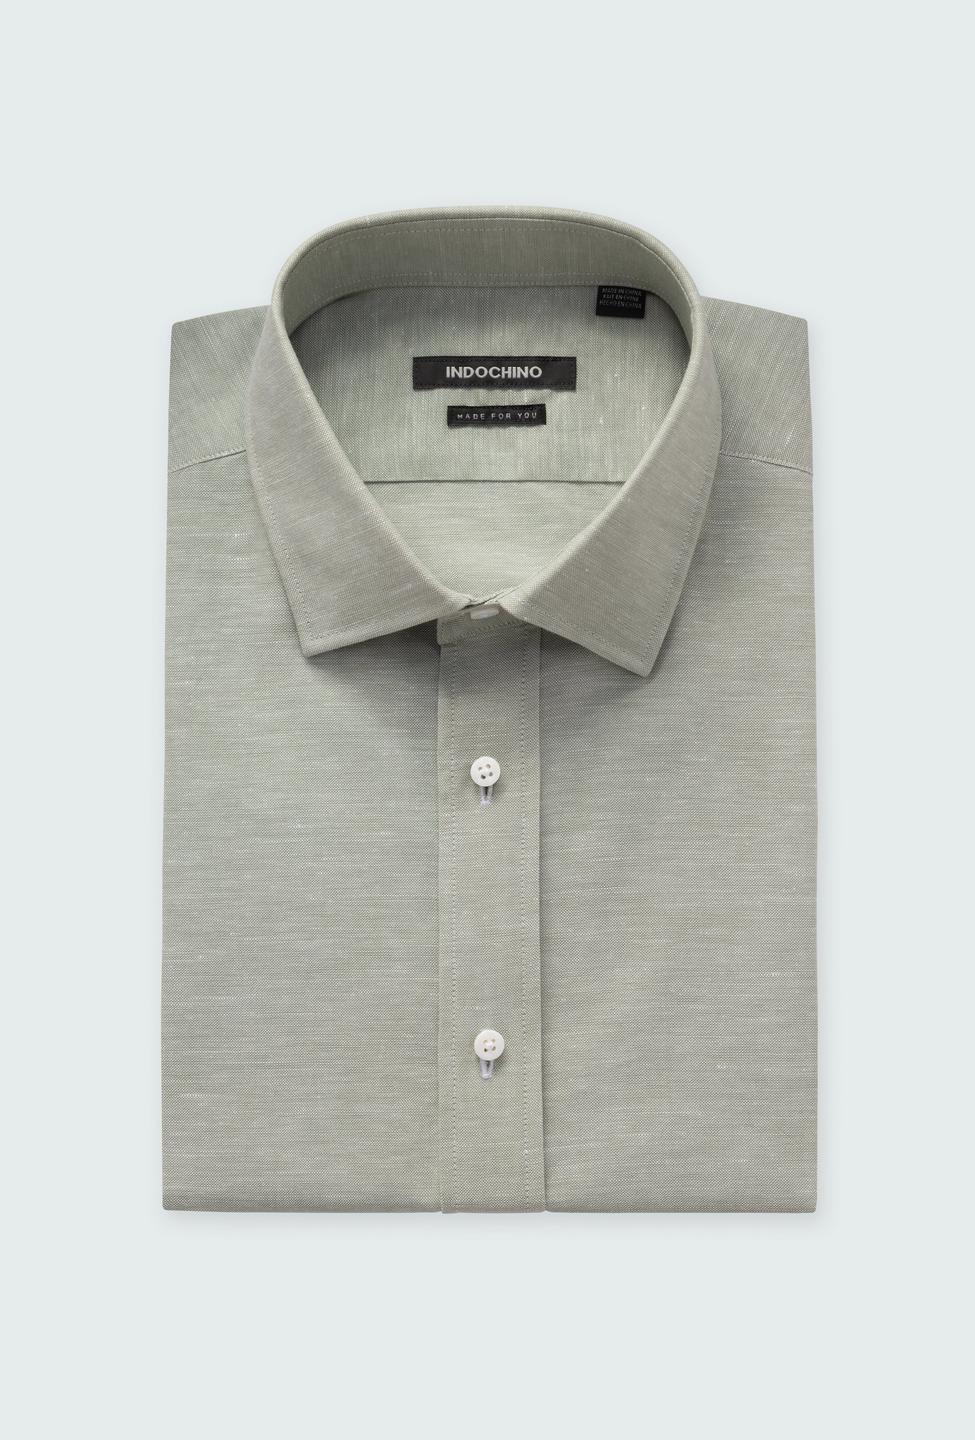 Sudbury Cotton Linen Sage Shirt